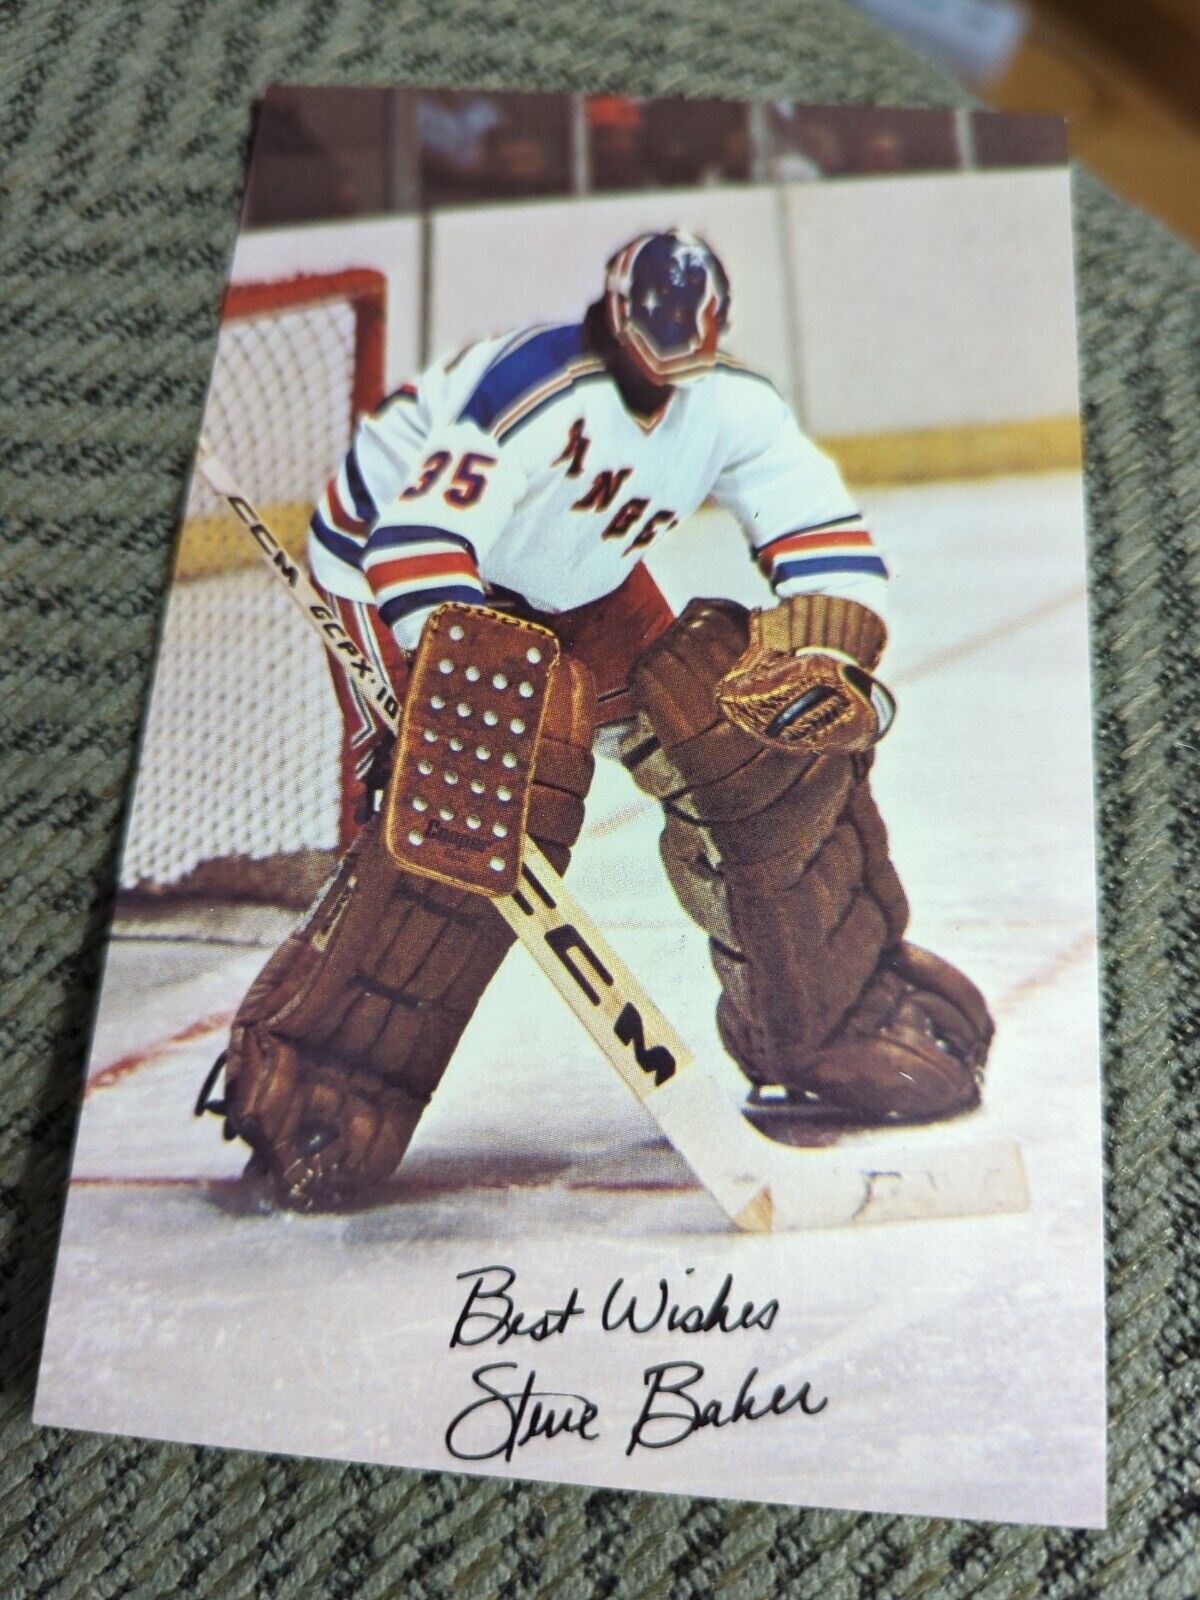 1970s Steve Baker Hockey Goalie for New York Rangers Signed postcard D37